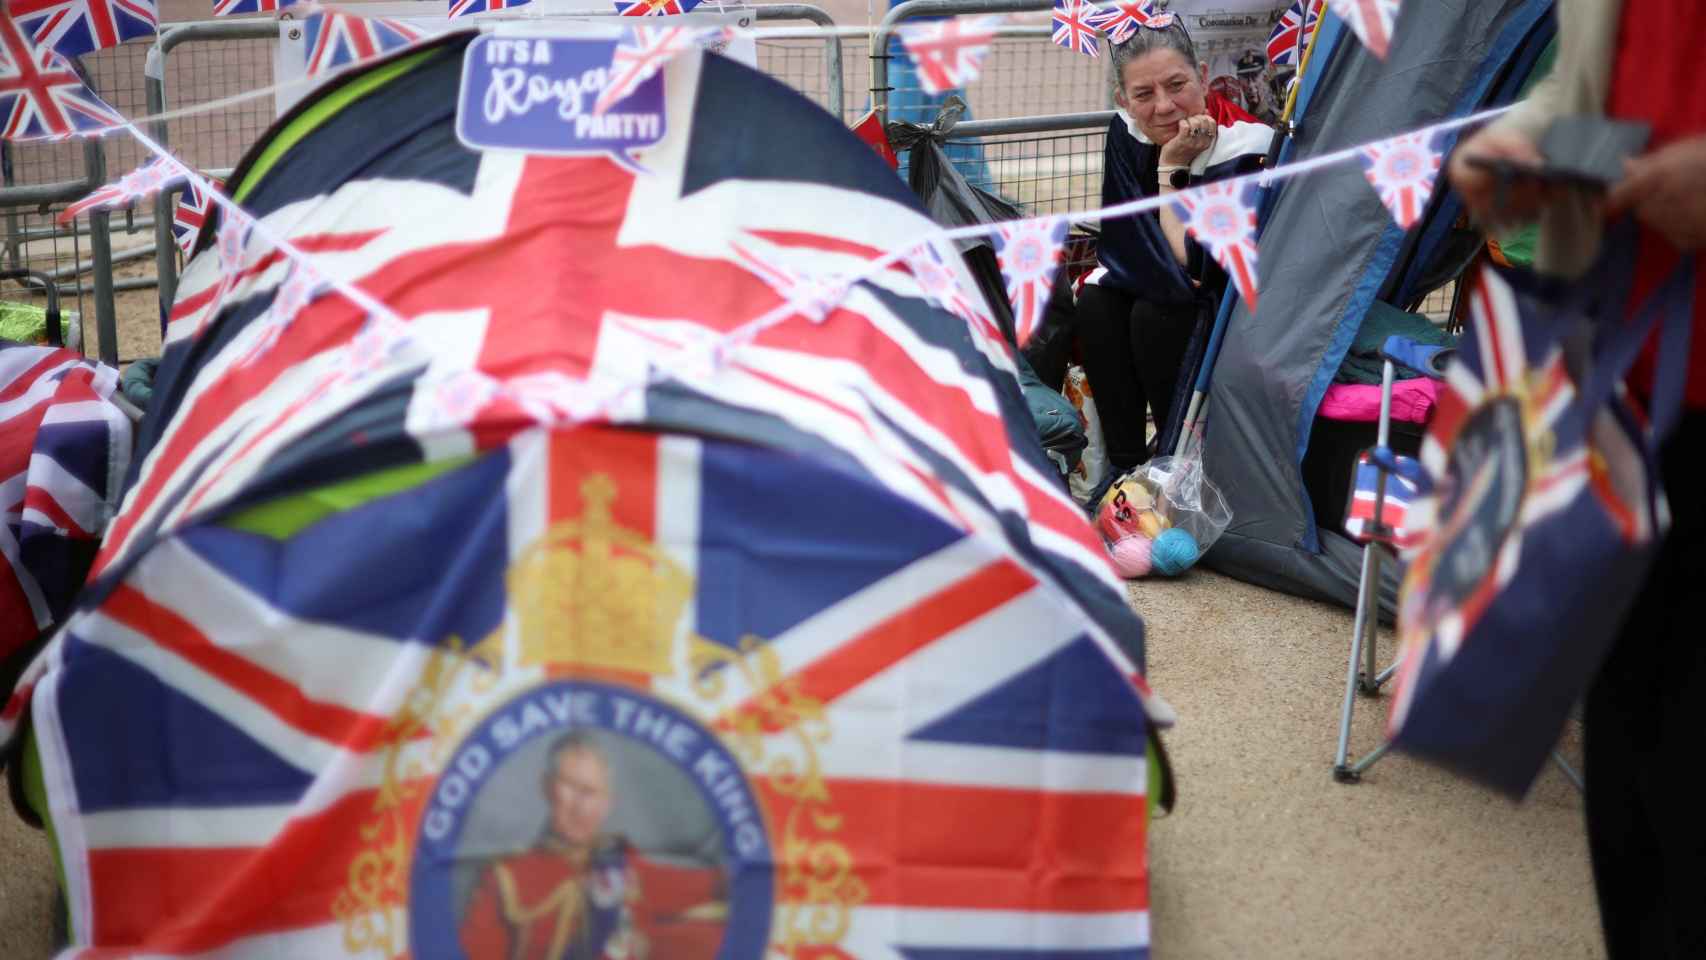 Los fanáticos de la realeza británica esperan en el Mall, antes de la Coronación del Rey Carlos y Camila, Reina Consorte de Gran Bretaña, en Londres.